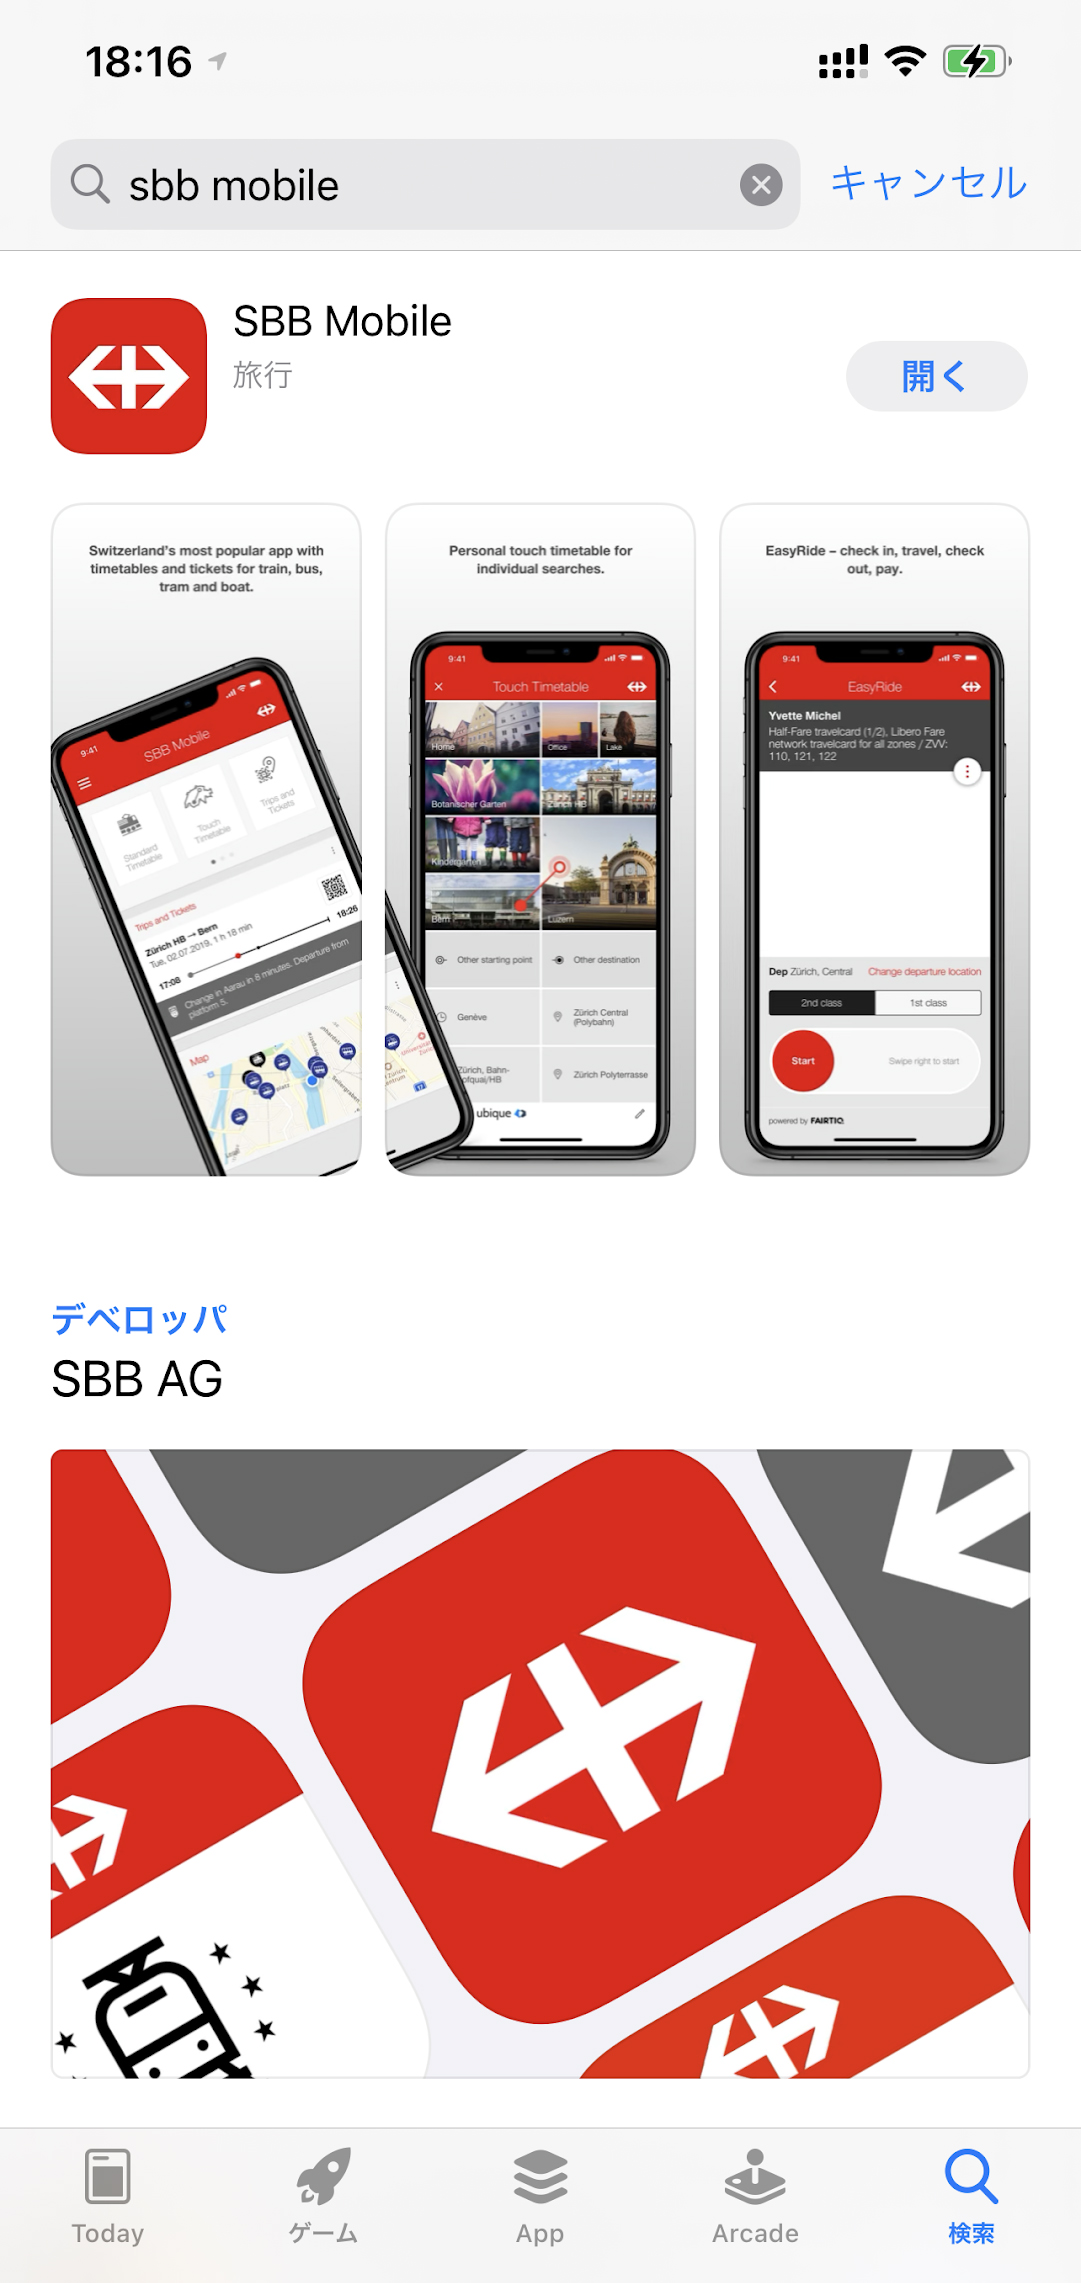 SBB Mobile